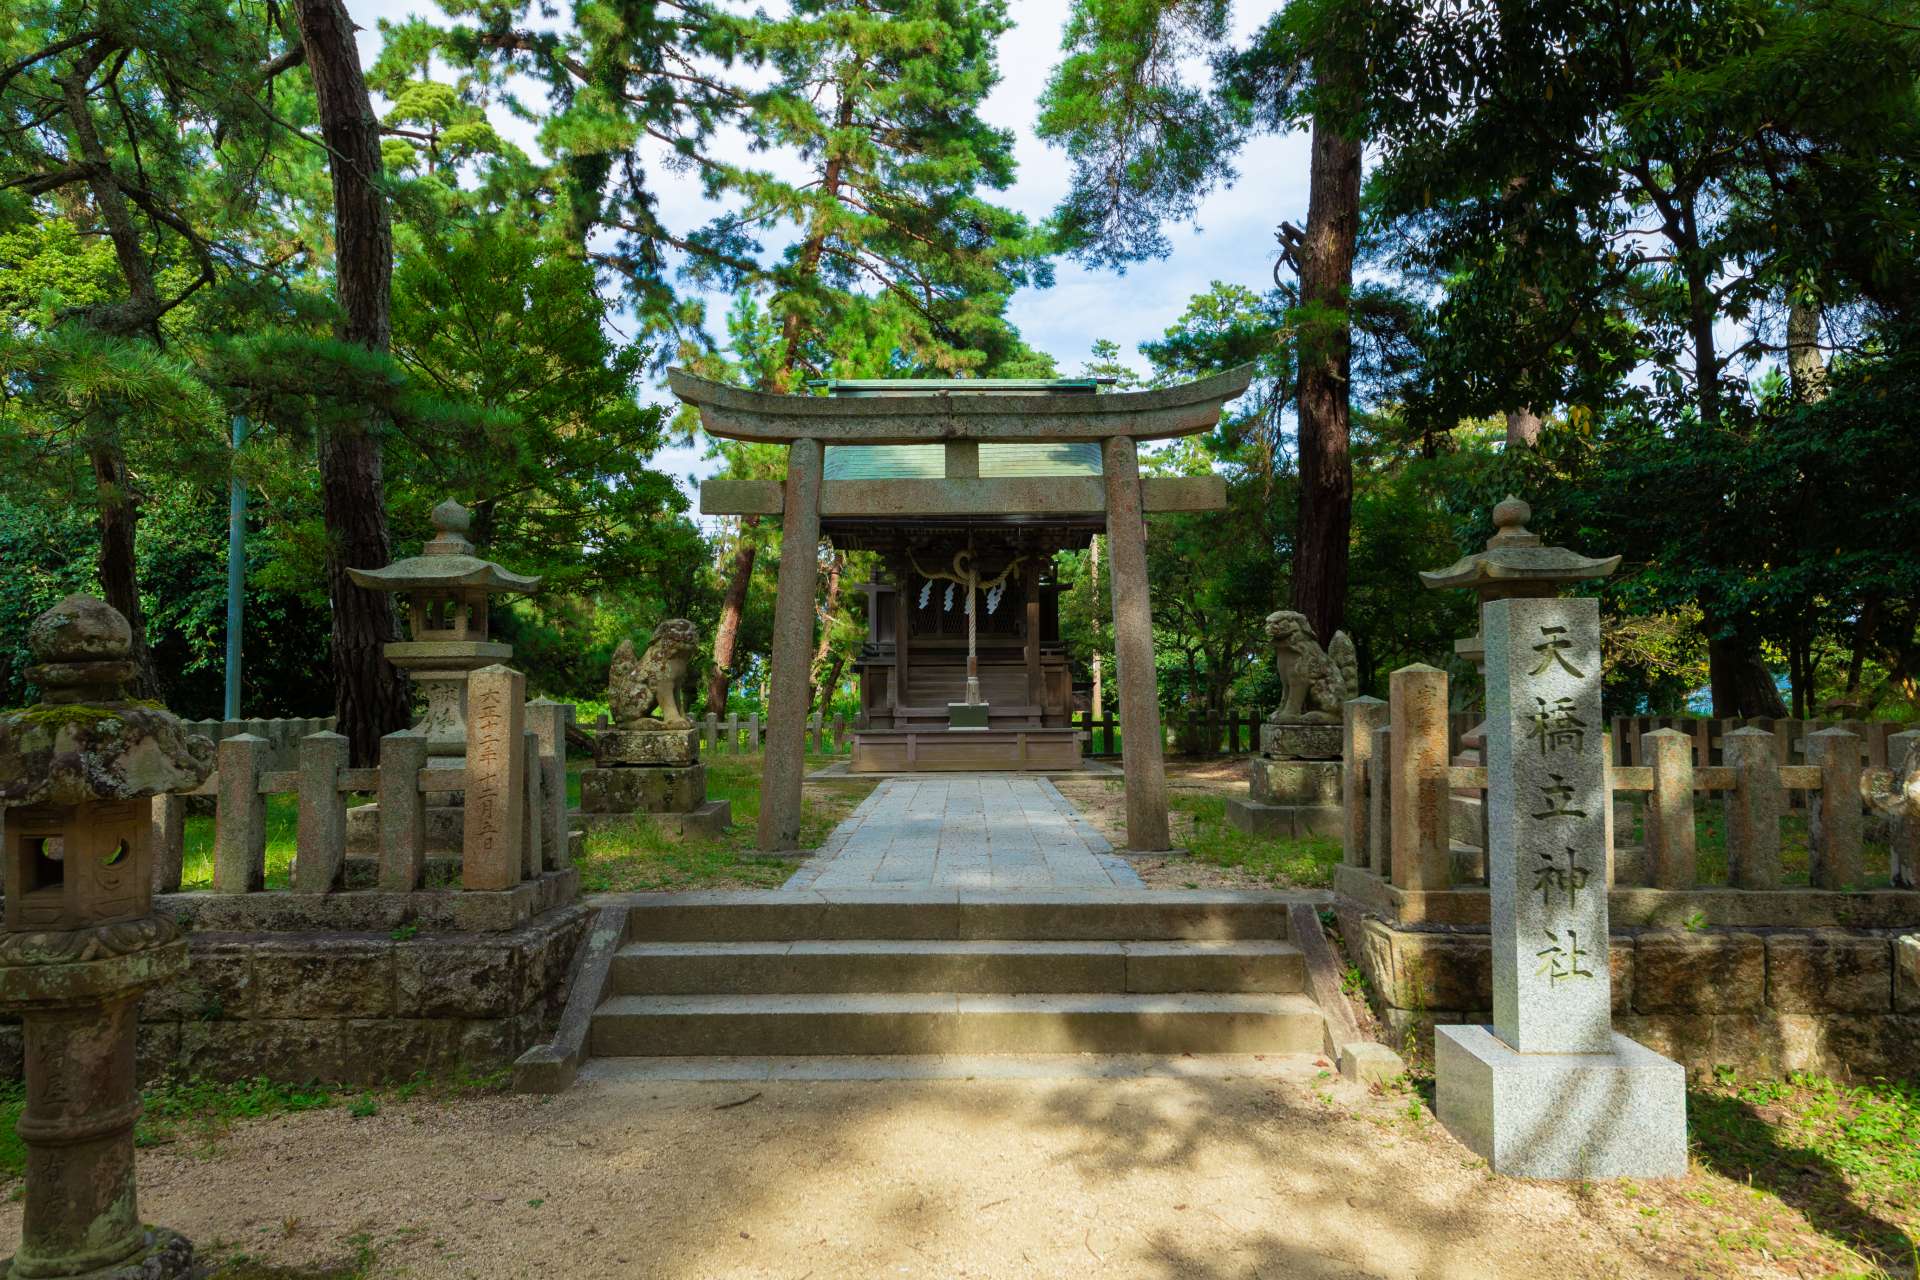 中途附近有天橋立神社，是許下浪漫願望的熱門場所。